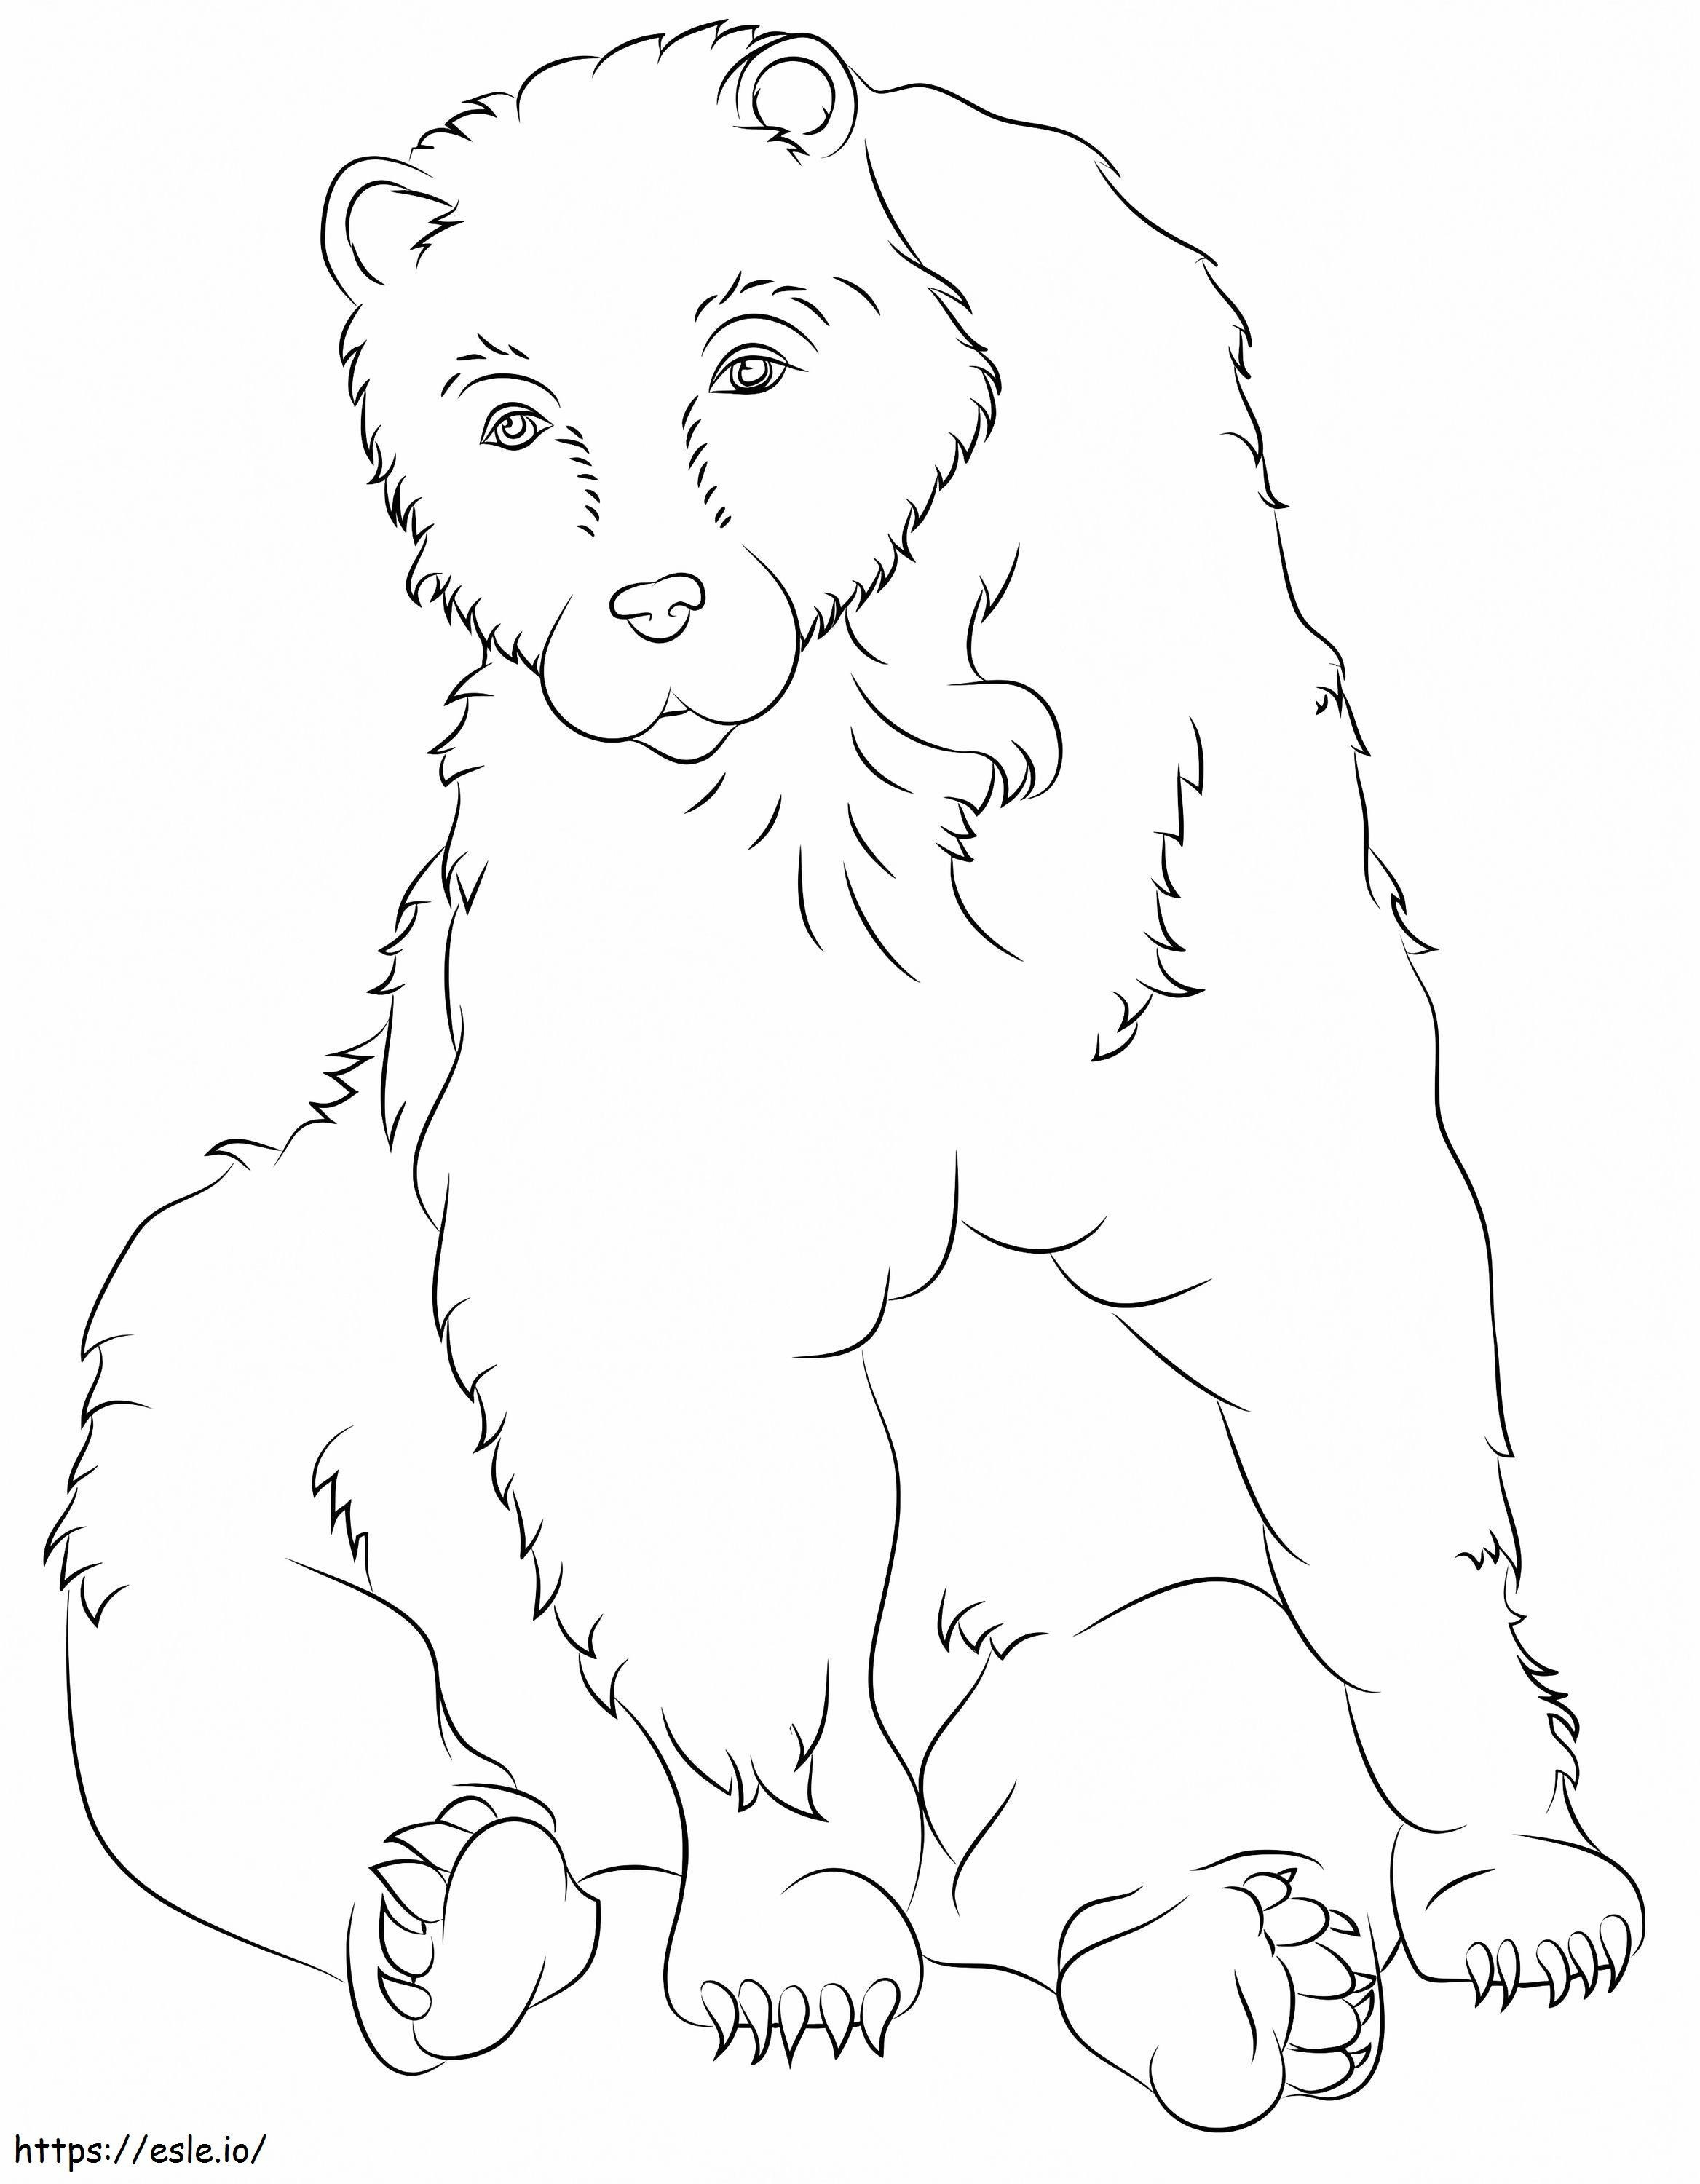 Siedzący niedźwiedź brunatny kolorowanka